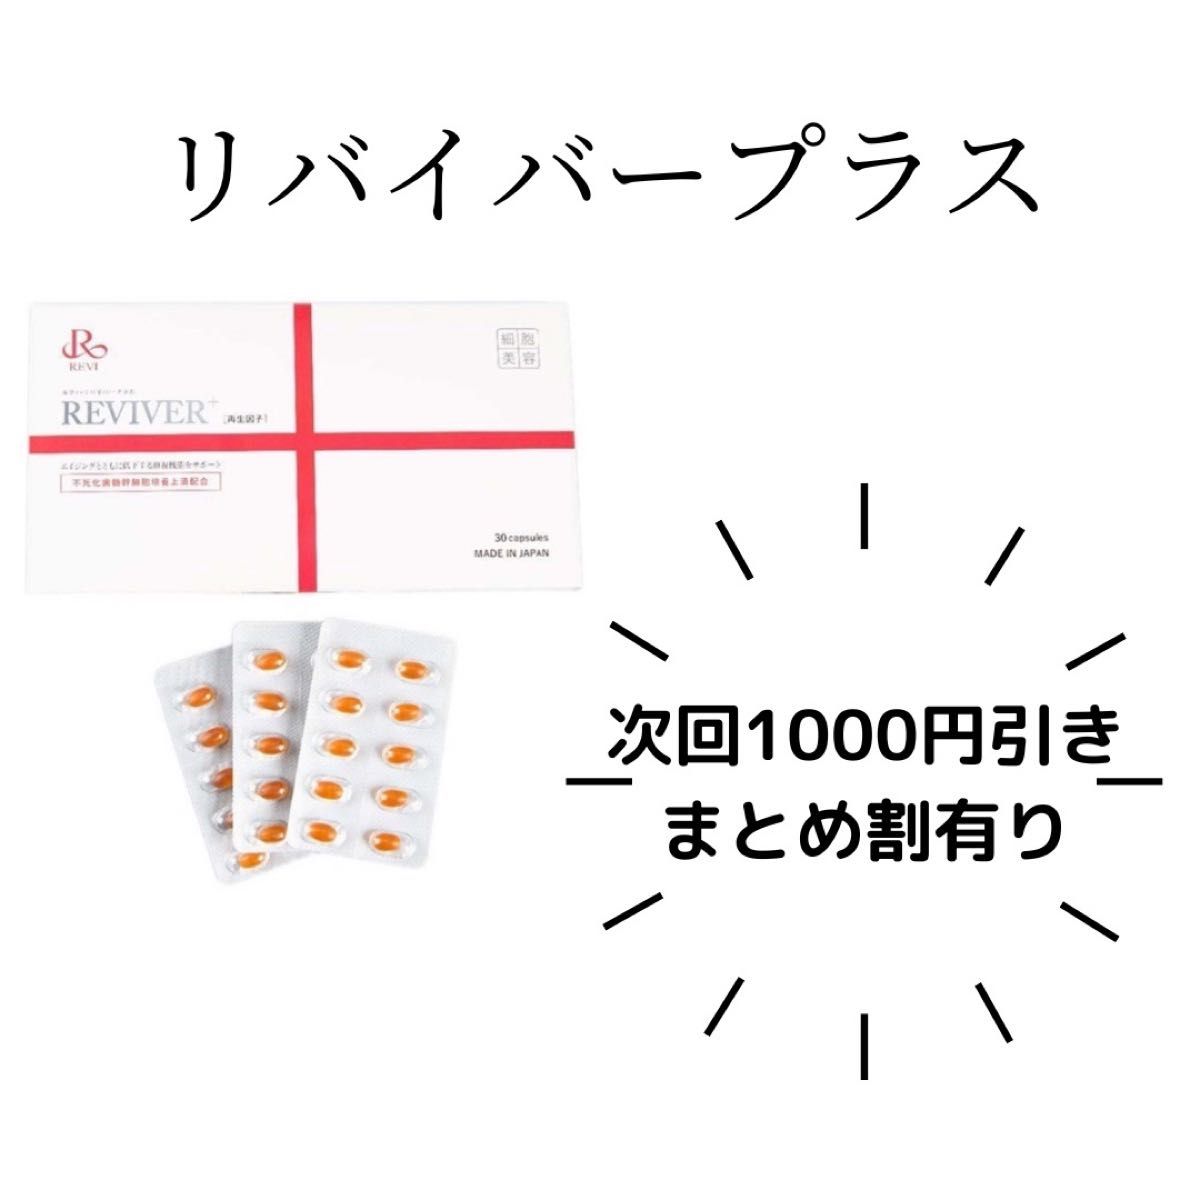 REVI リバイバープラス60粒 - pharmacube.jp